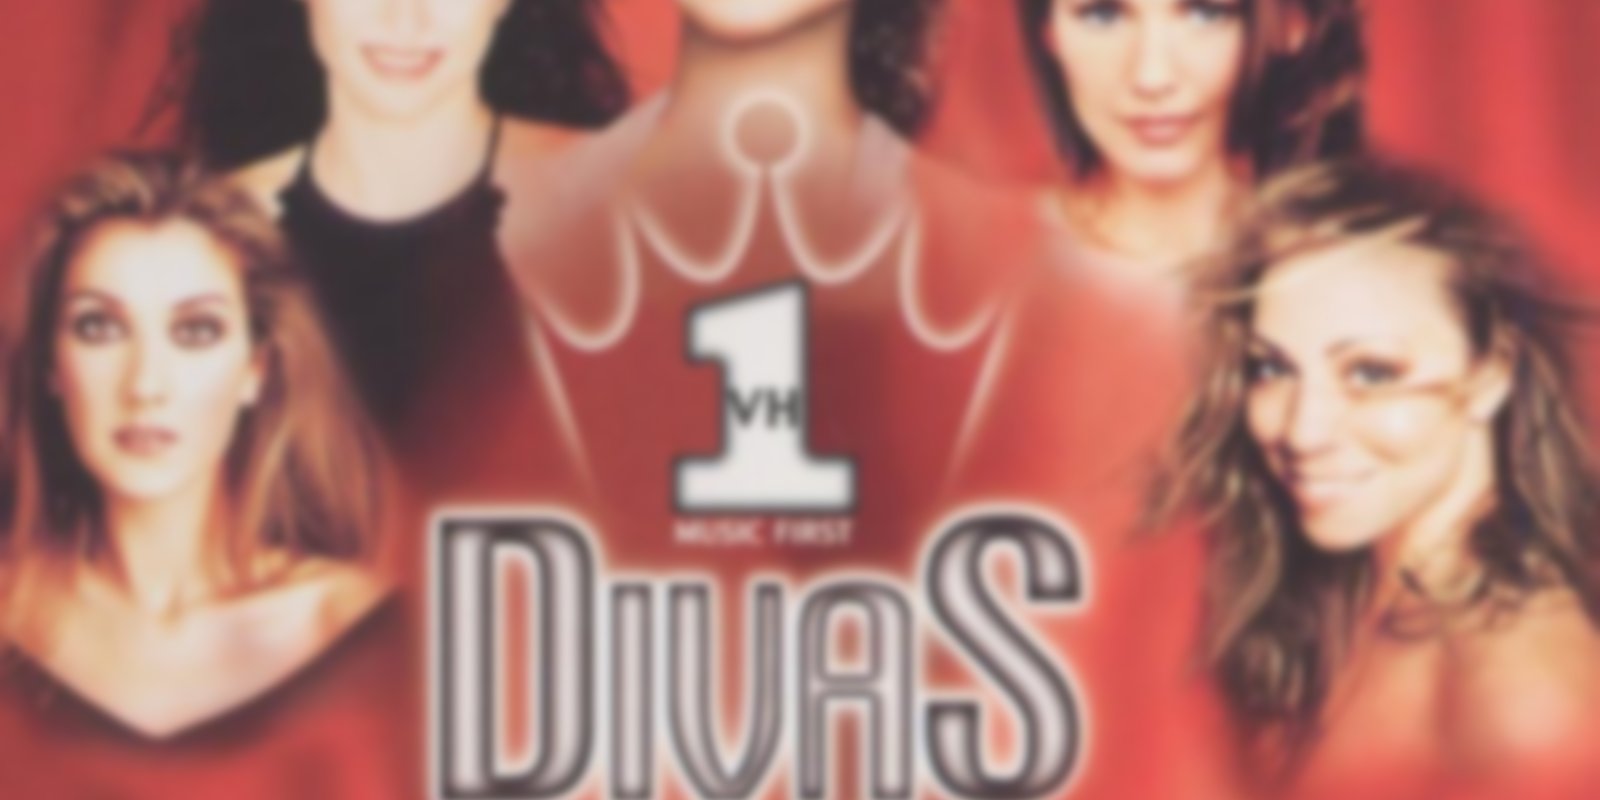 VH-1 Divas Live